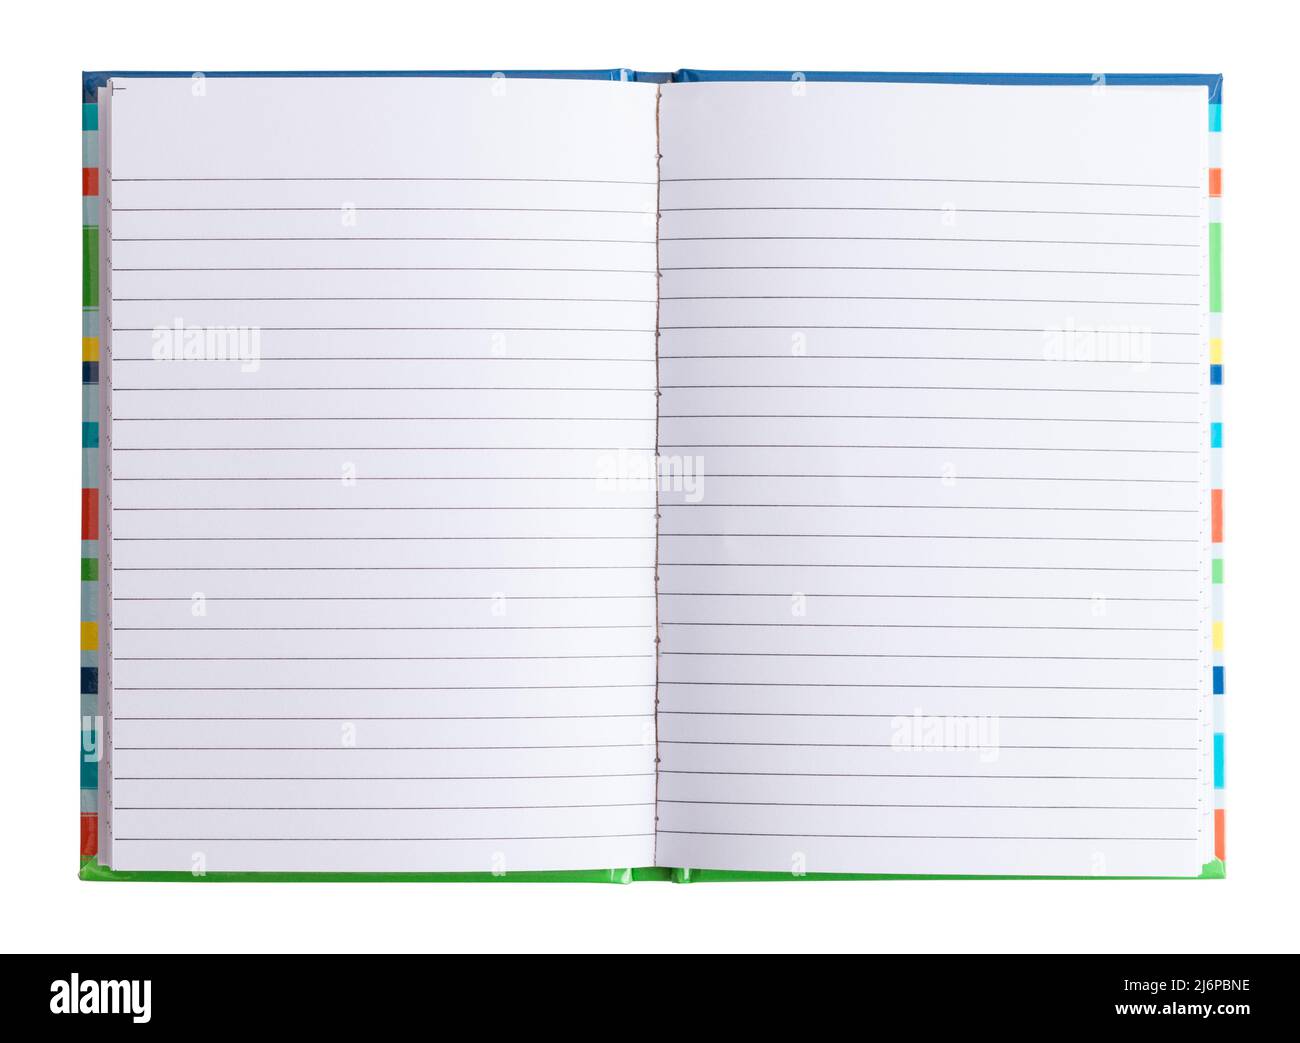 Ouvrez le livre de notes avec des pages de papier à lignes vierges découpées sur blanc. Banque D'Images